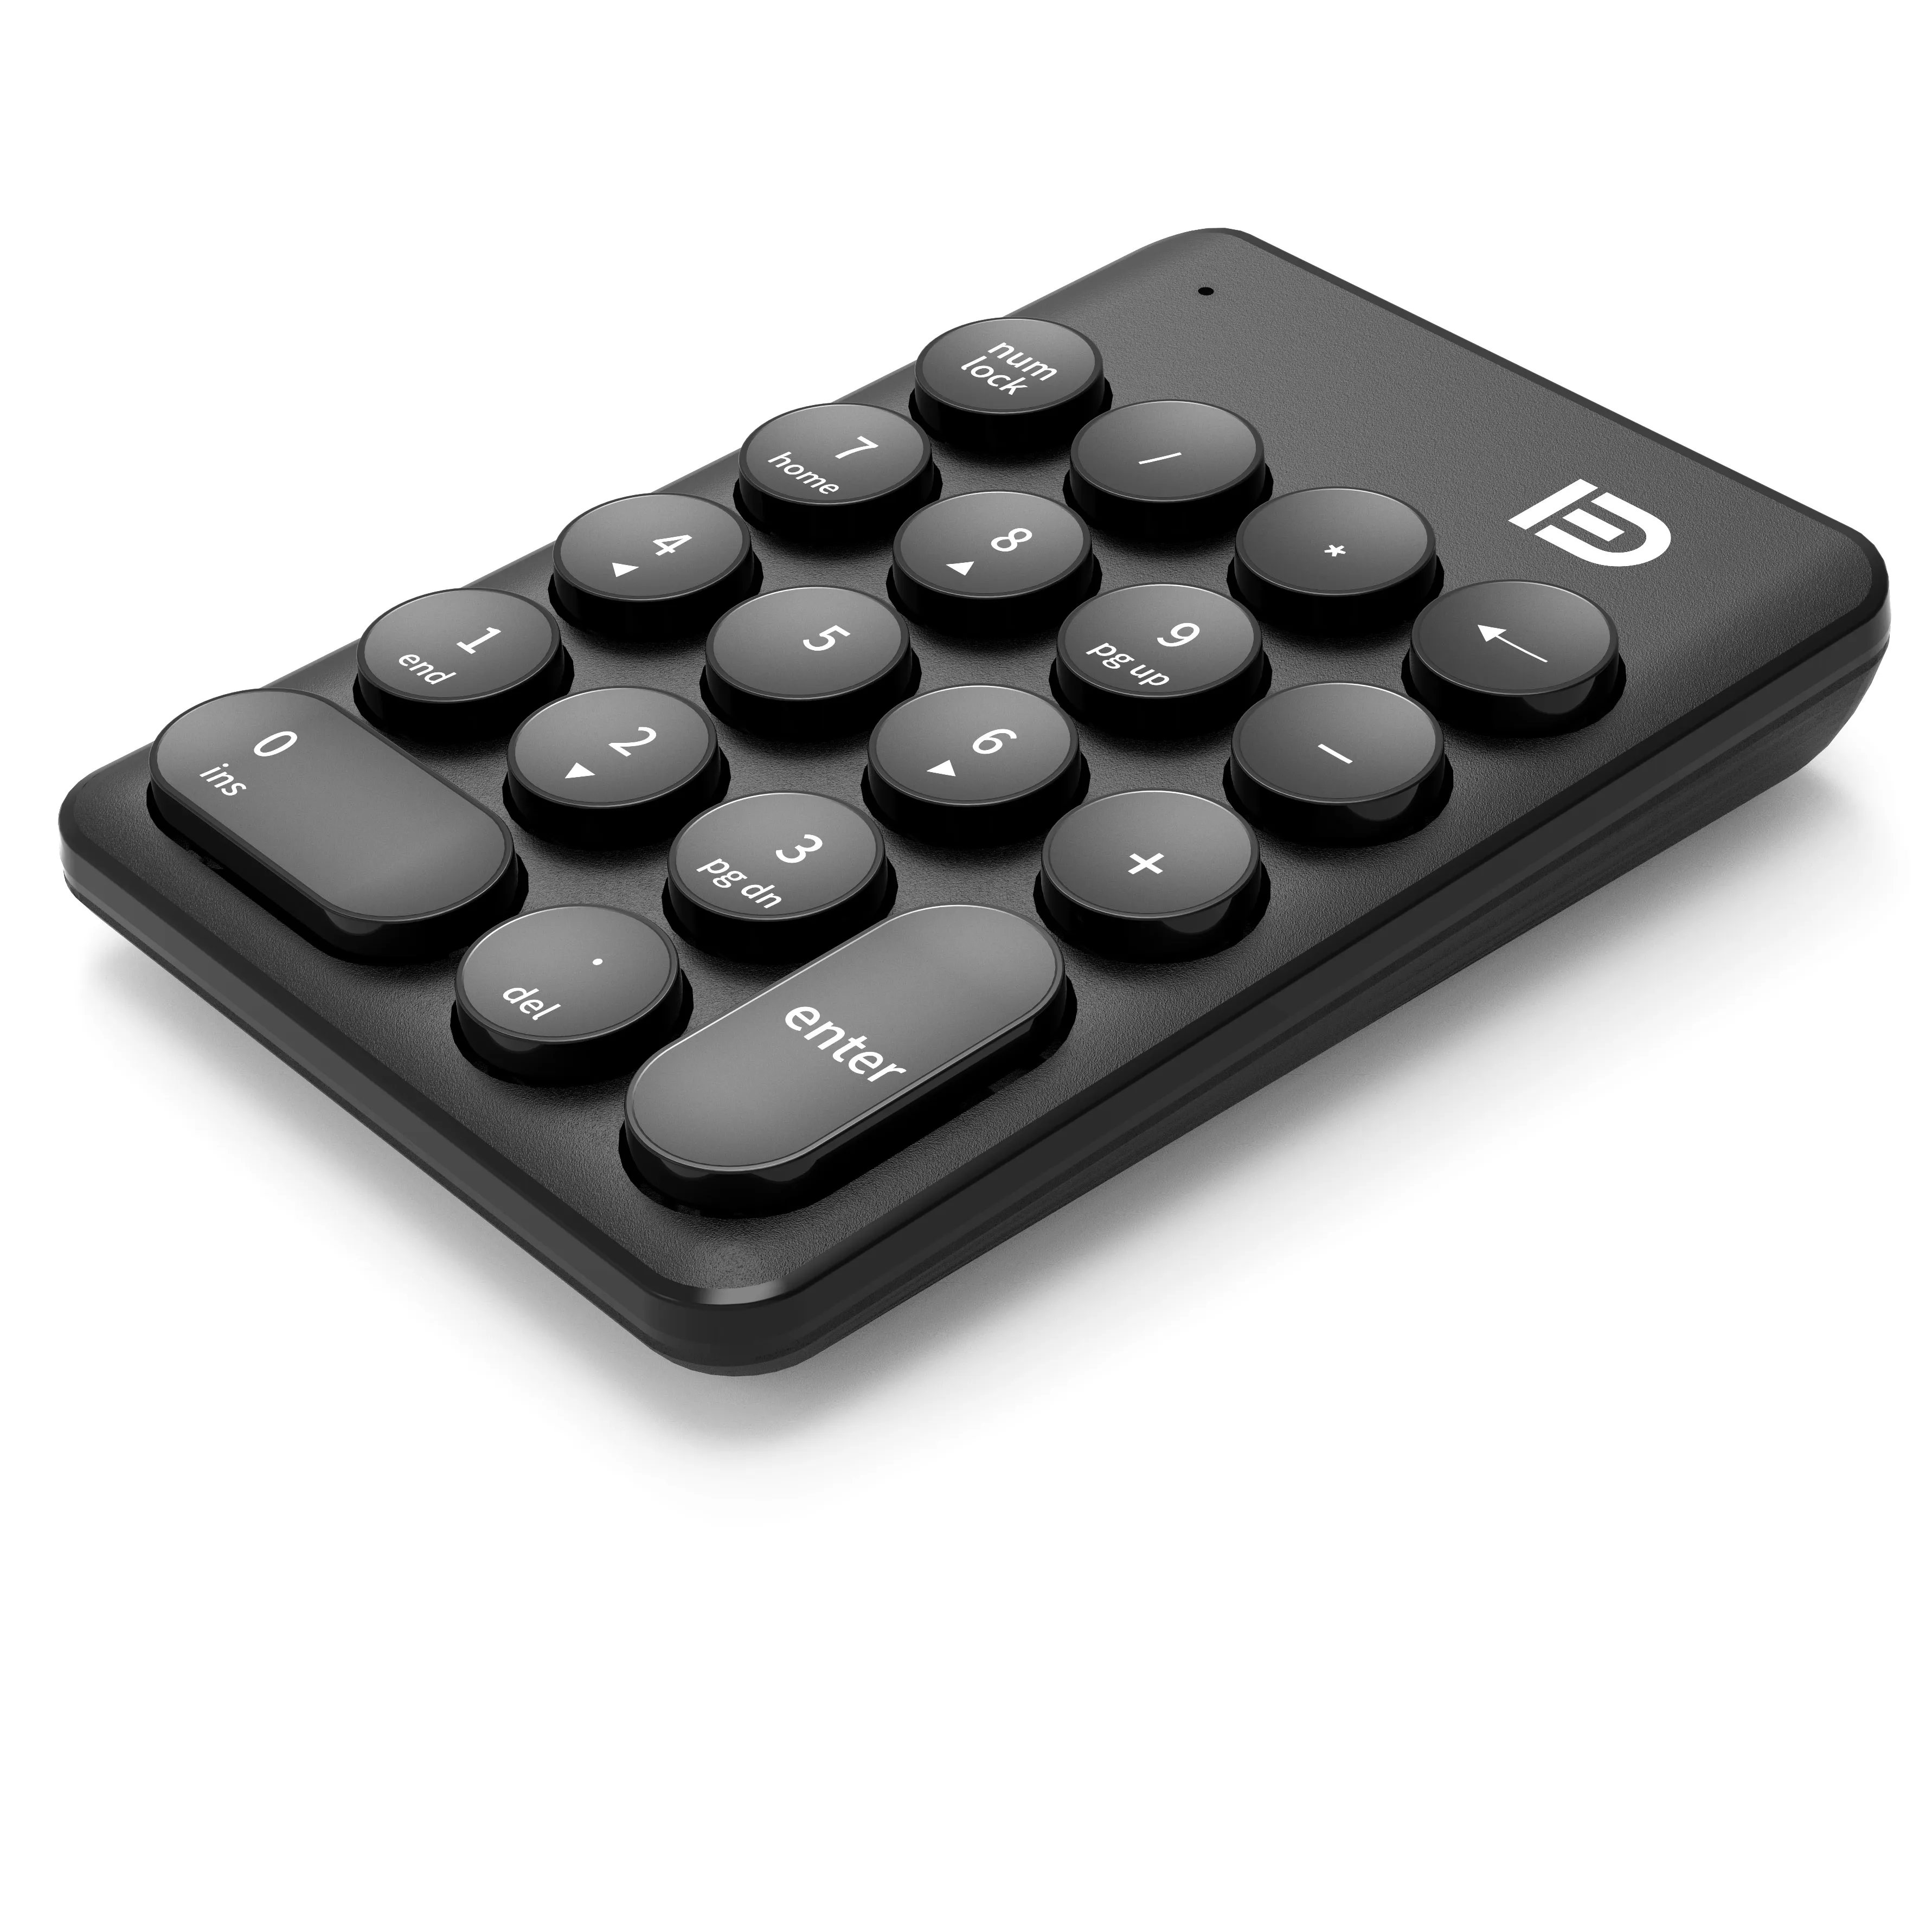 FD iK6610 özelleştirme kablosuz klavye Mini Usb mavi kanal 2.4G sayısal klavye Oem kutusu